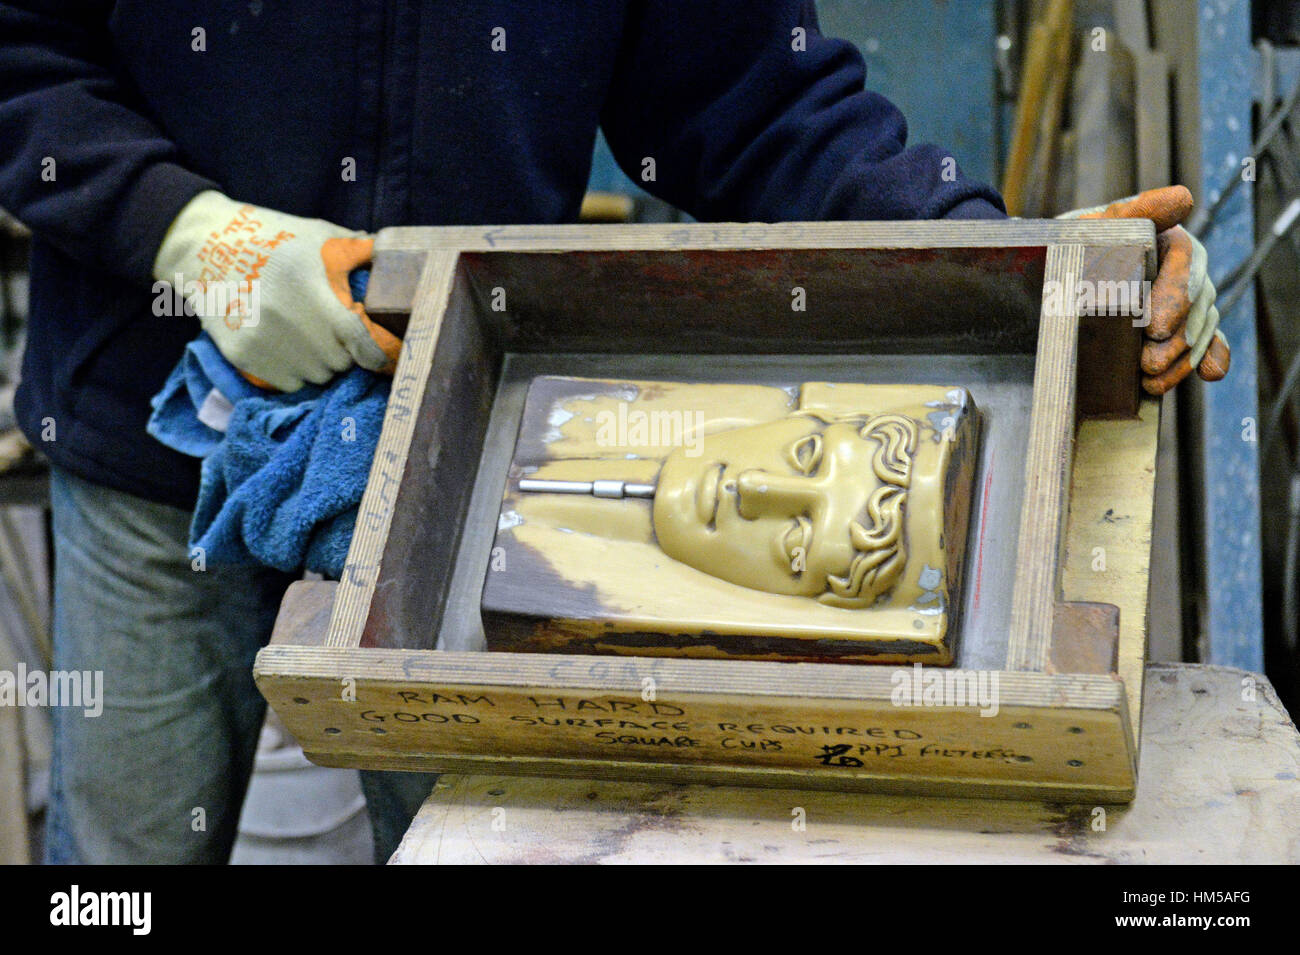 Getti di sabbia vengono utilizzati per rendere le maschere di BAFTA al nuovo Pro fonderie in West Drayton, Middlesex, precedendo la cerimonia entro questo mese. Foto Stock